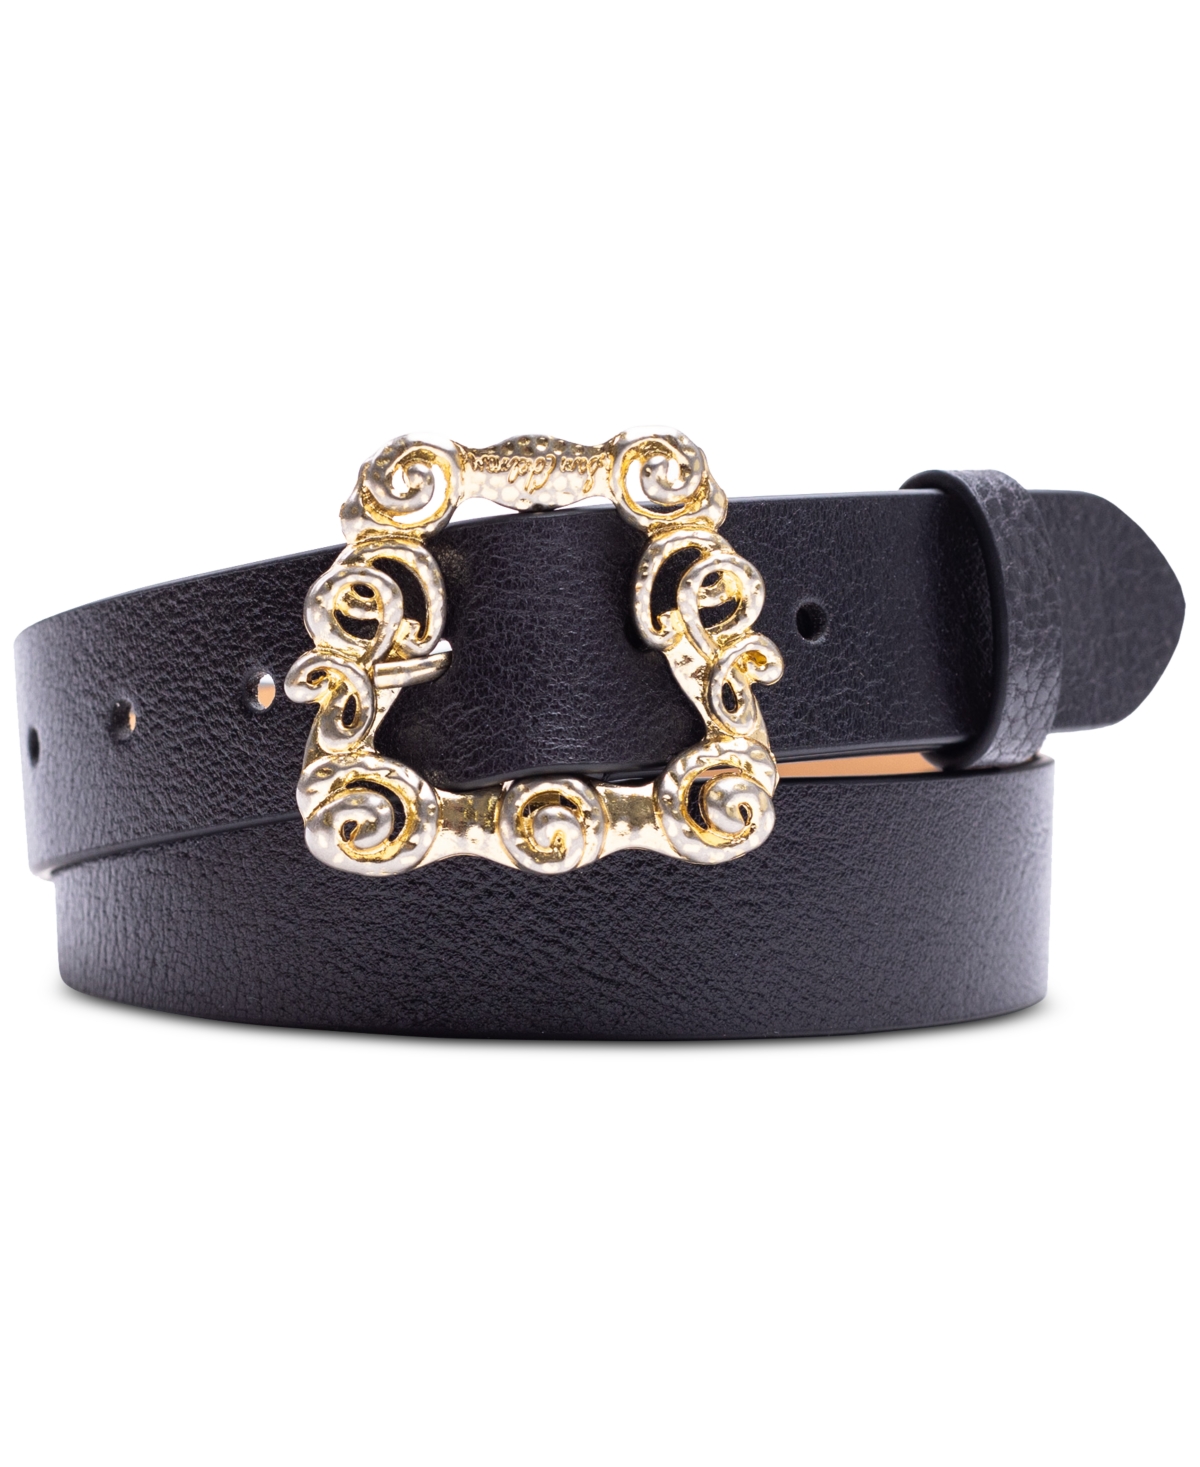 Sam Edelman Women's Ornate Embellished Buckle Leather Belt In Black